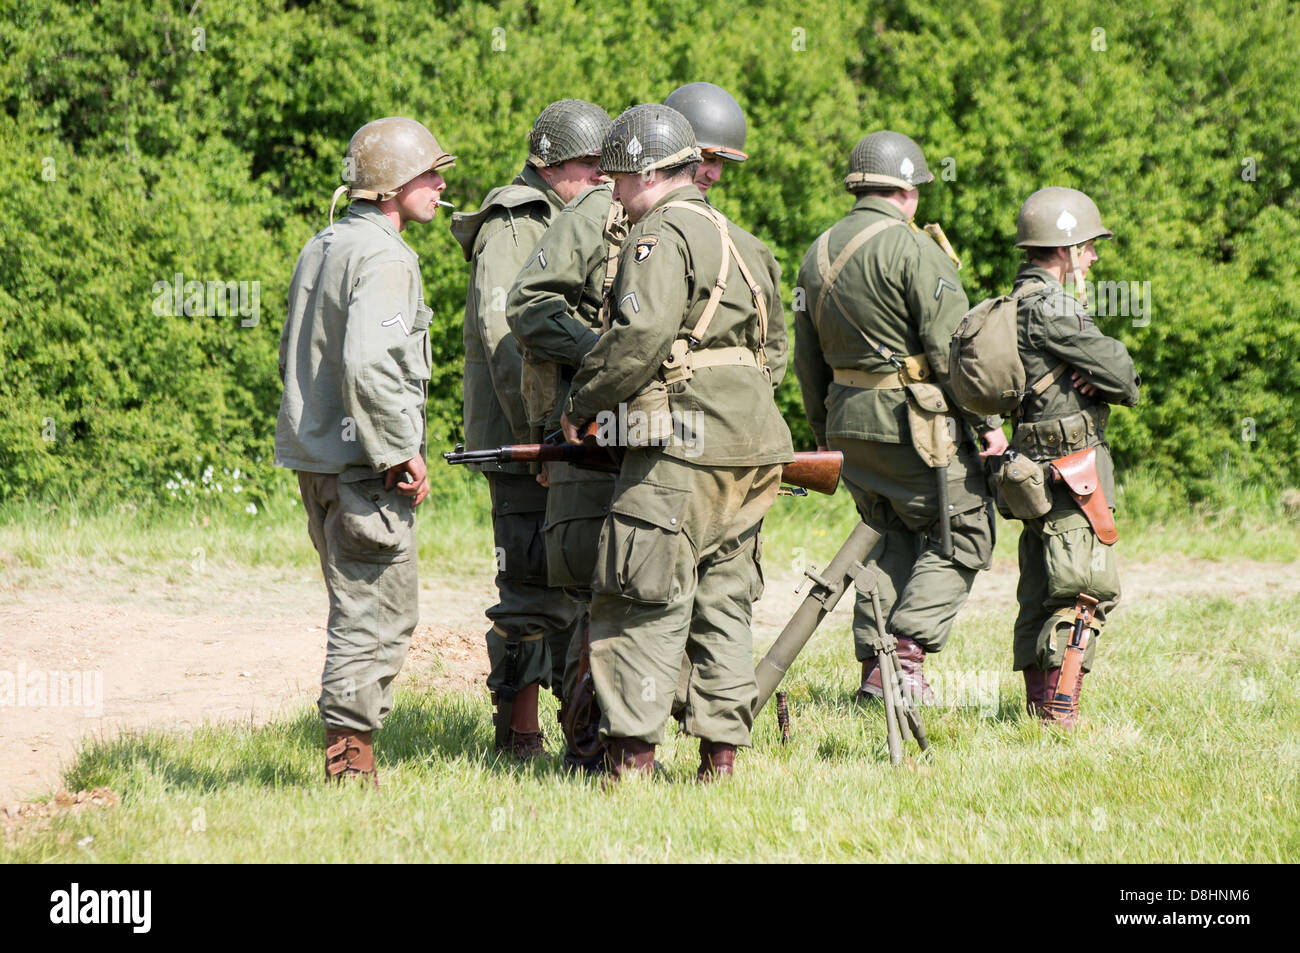 Overlord, D-Day re-enactment à Denmead 2013. Groupe de soldats américains standing tout en vous relaxant. Banque D'Images